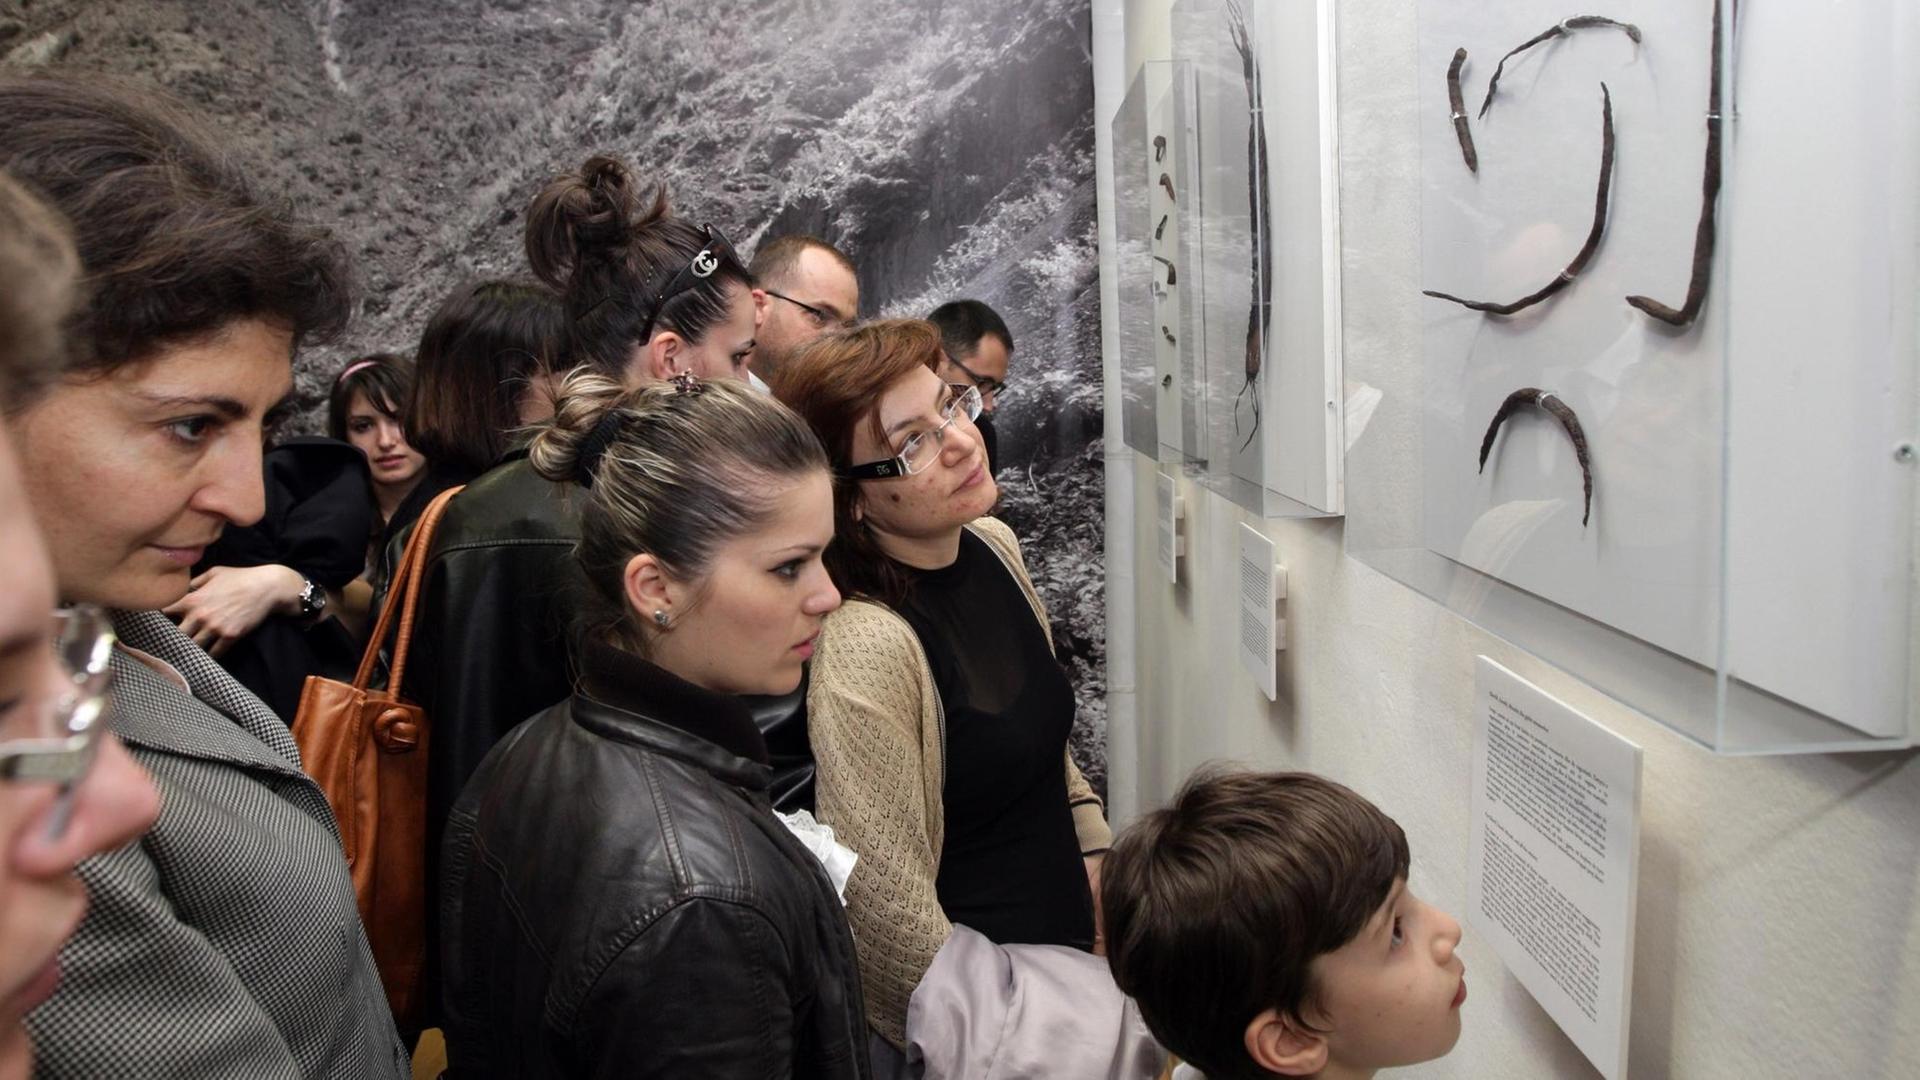 Besucher einer Ausstellung in Tirana, im April 2012, blicken auf Gegenstände aus albanischen Gefängnissen während der Diktatur von Enver Hoxha. Organisator und Sammler war der ehemalige politische Häftling Fatos Lubonja.